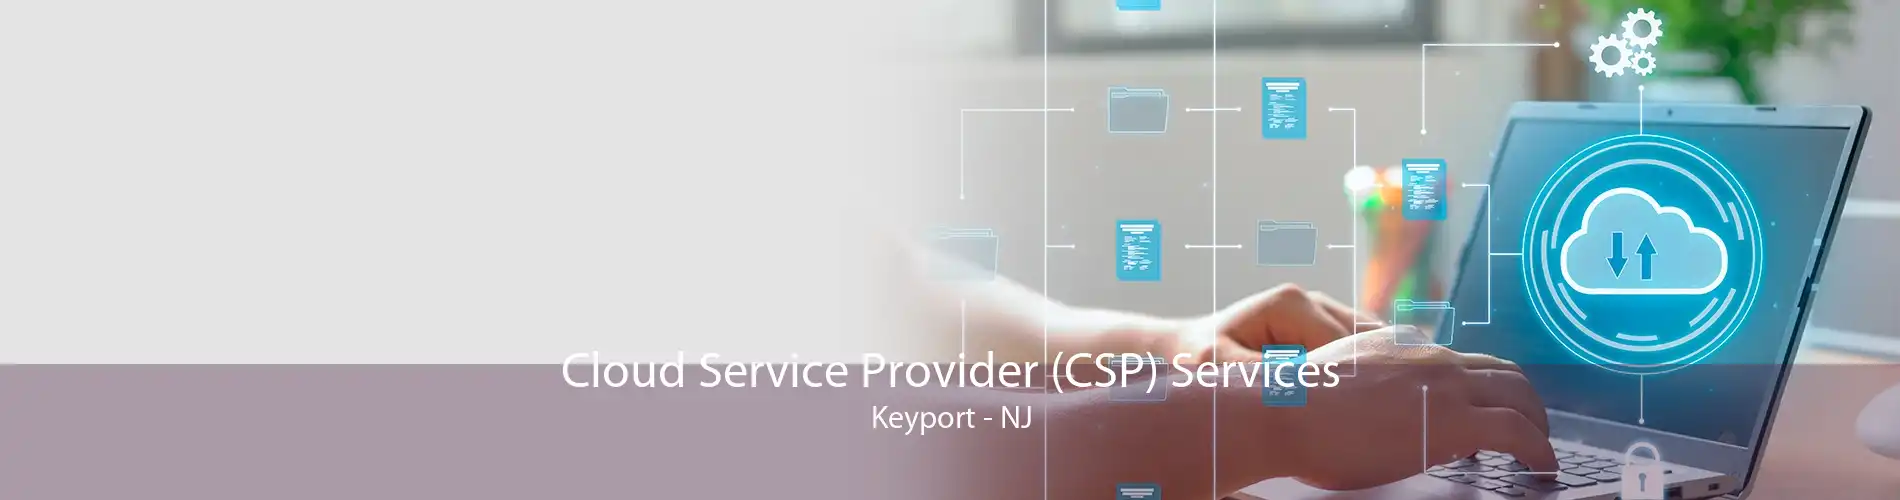 Cloud Service Provider (CSP) Services Keyport - NJ